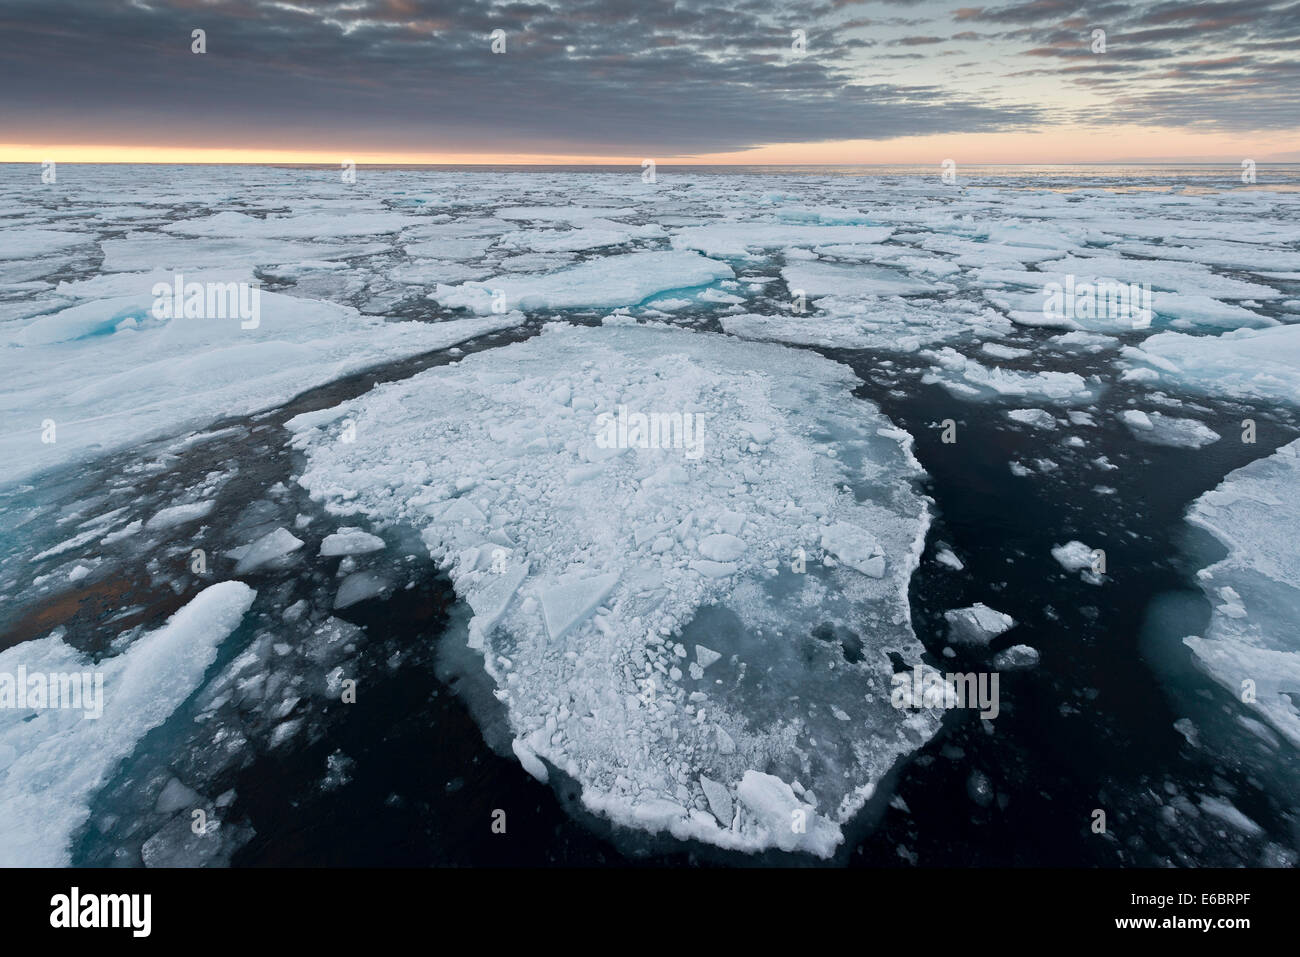 Les icebergs, la banquise, l'humeur du soir, l'océan Arctique, l'archipel du Svalbard, l'île de Spitsbergen, Svalbard et Jan Mayen (Norvège) Banque D'Images